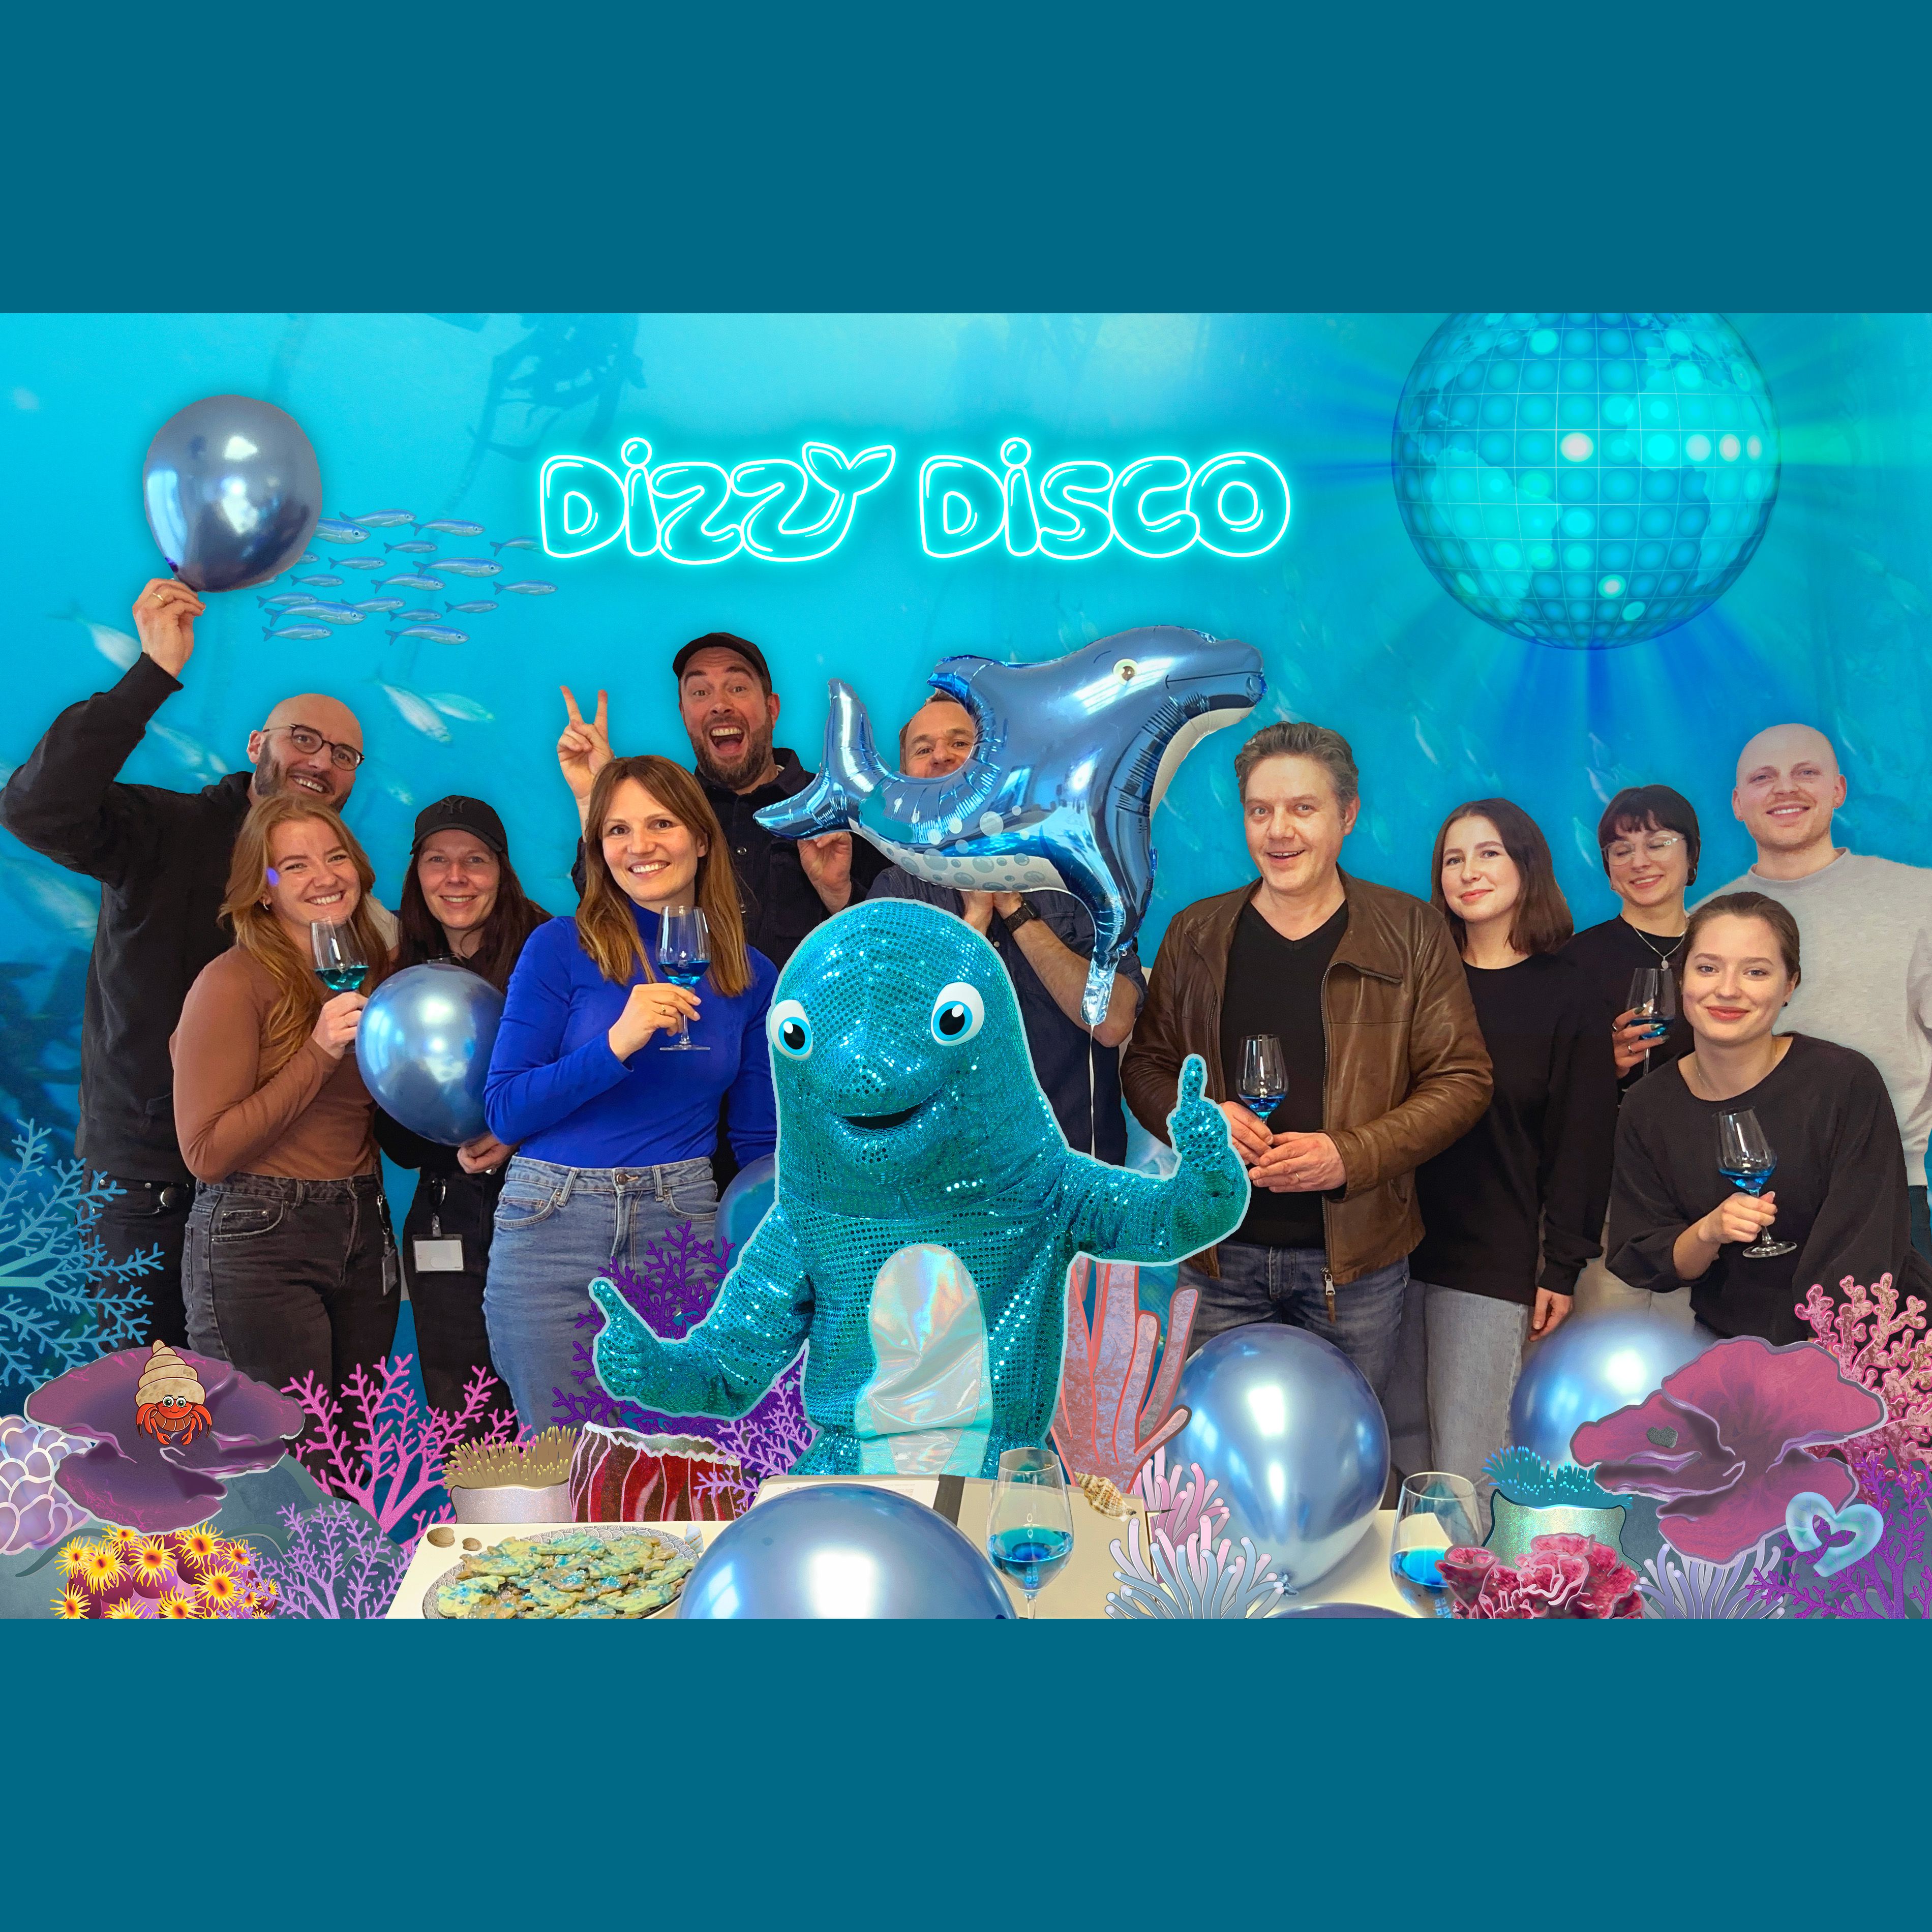 Disco-Pop-Delfin Dizzy Disco unterschreibt bei Universal Music Family Entertainment